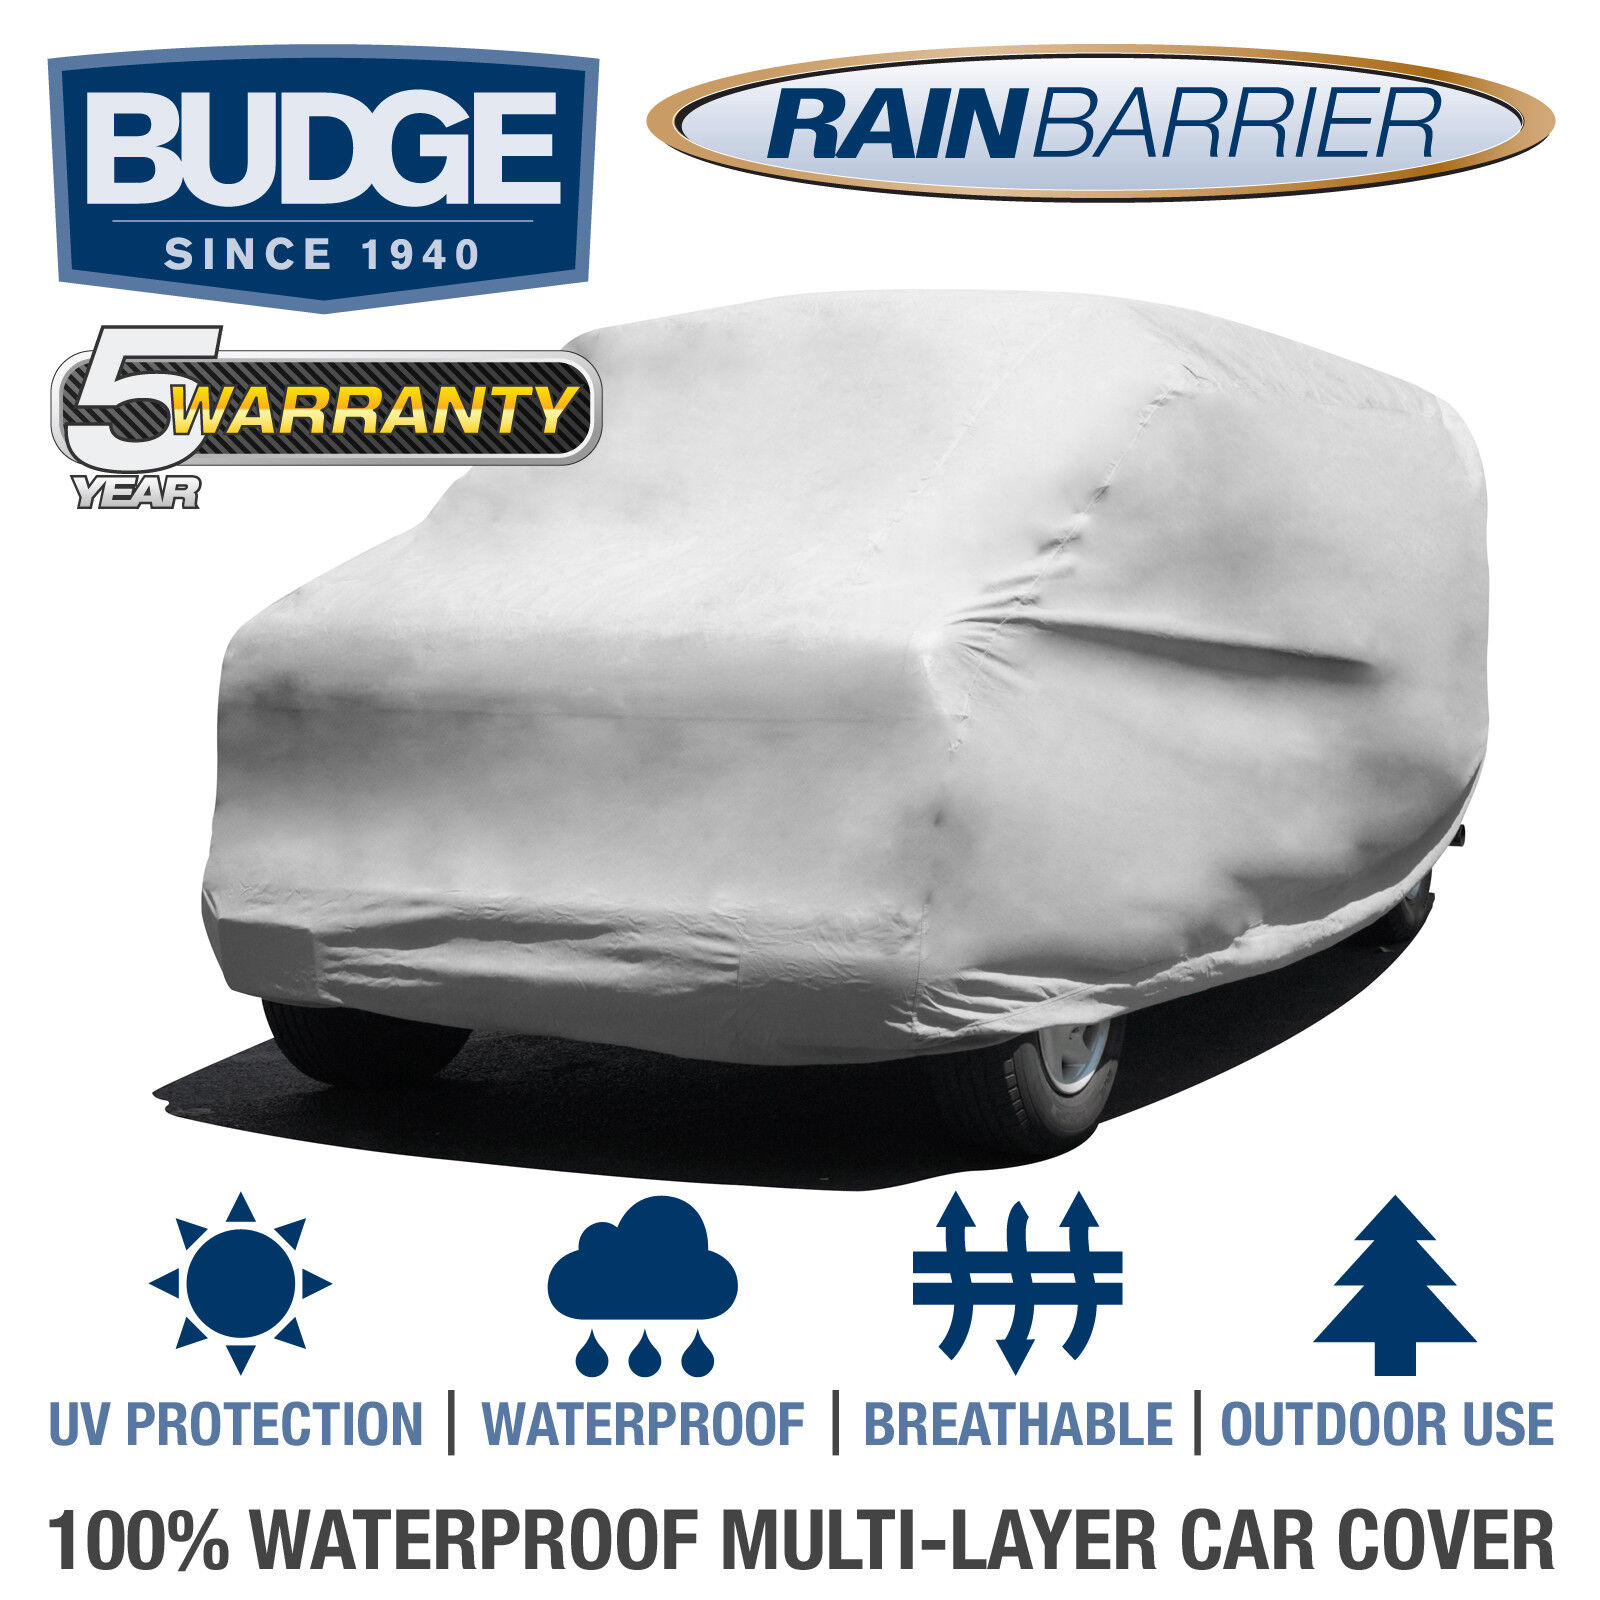 Budge Rain Barrier Van Cover Fits Standard Vans up to 18\' Long | Waterproof